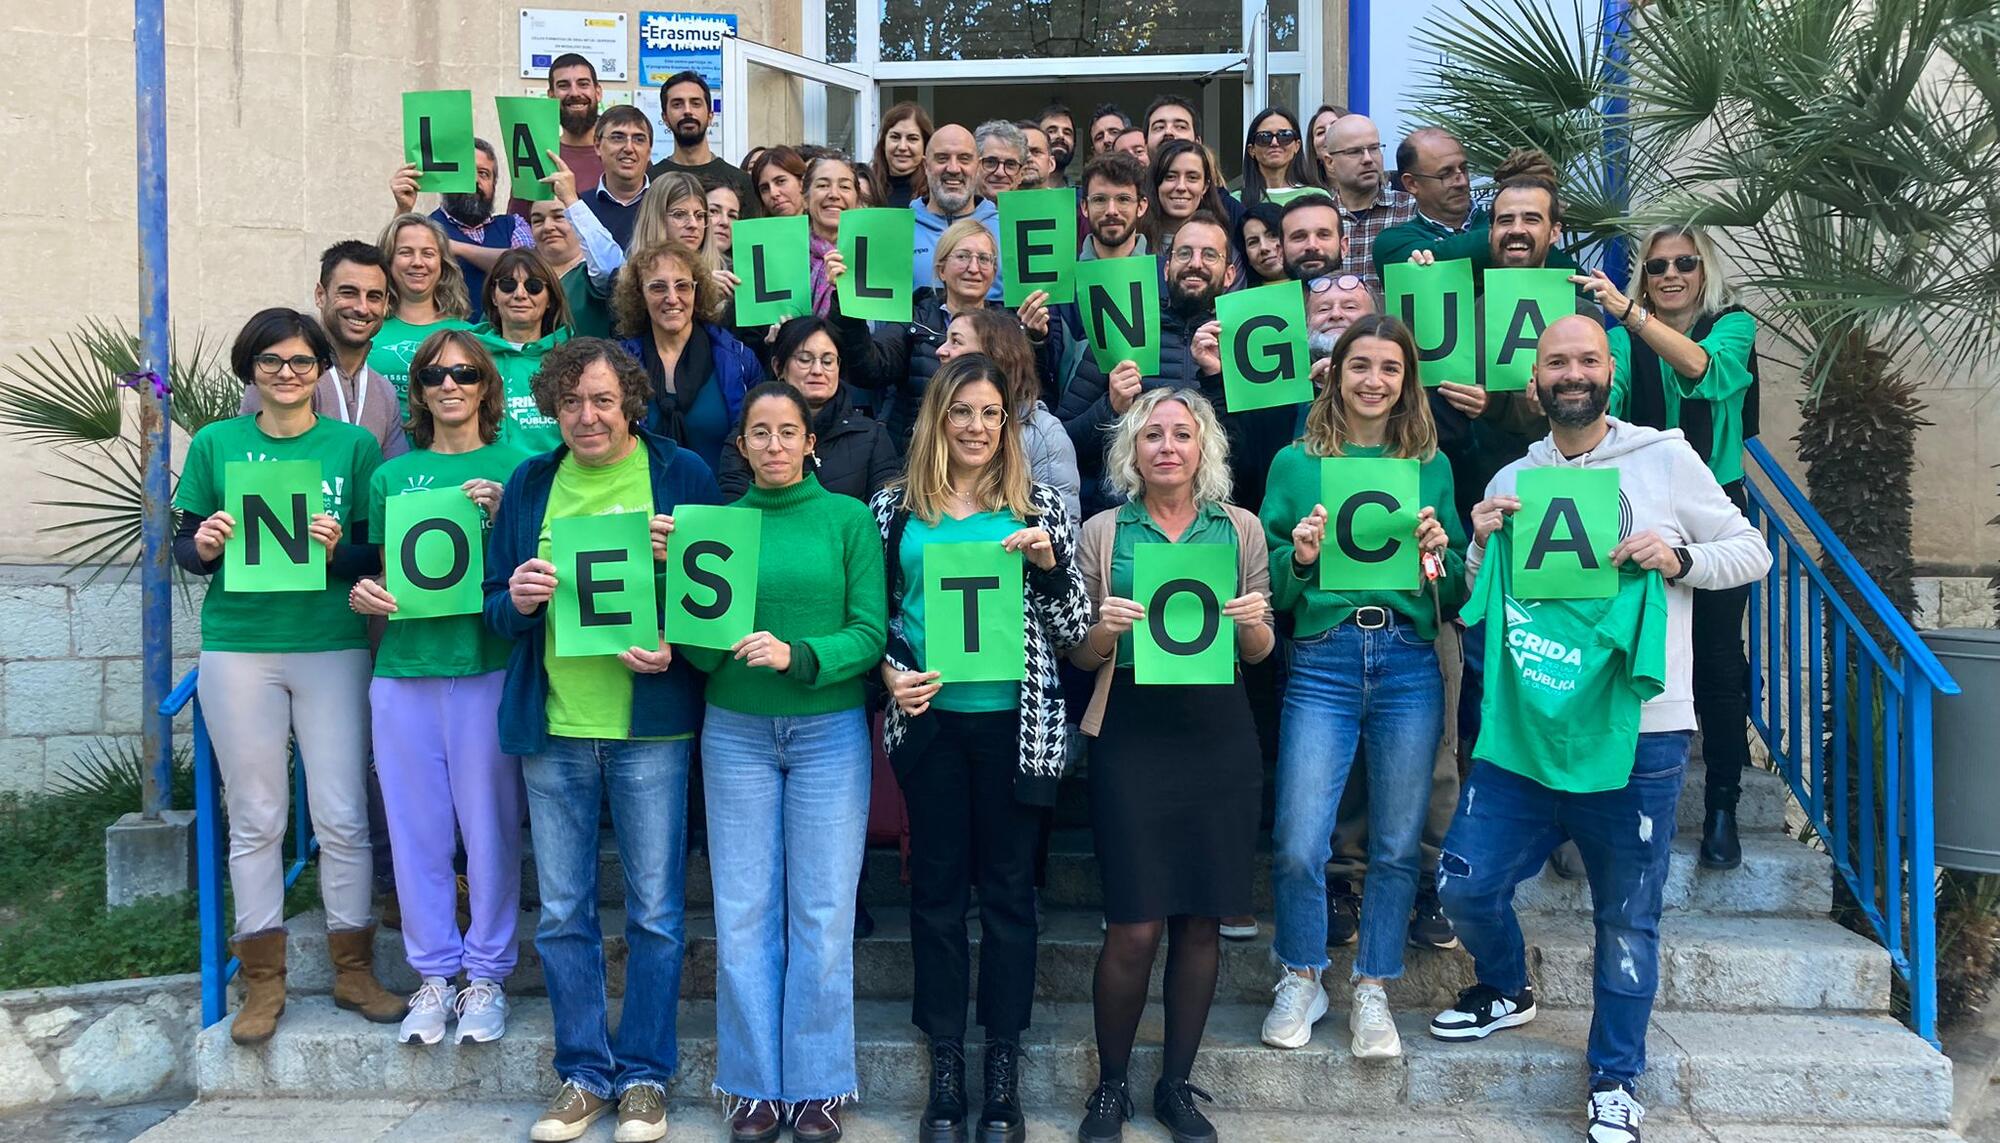 Campanya "La llengua no es toca" als centres educatius de les Illes Balears